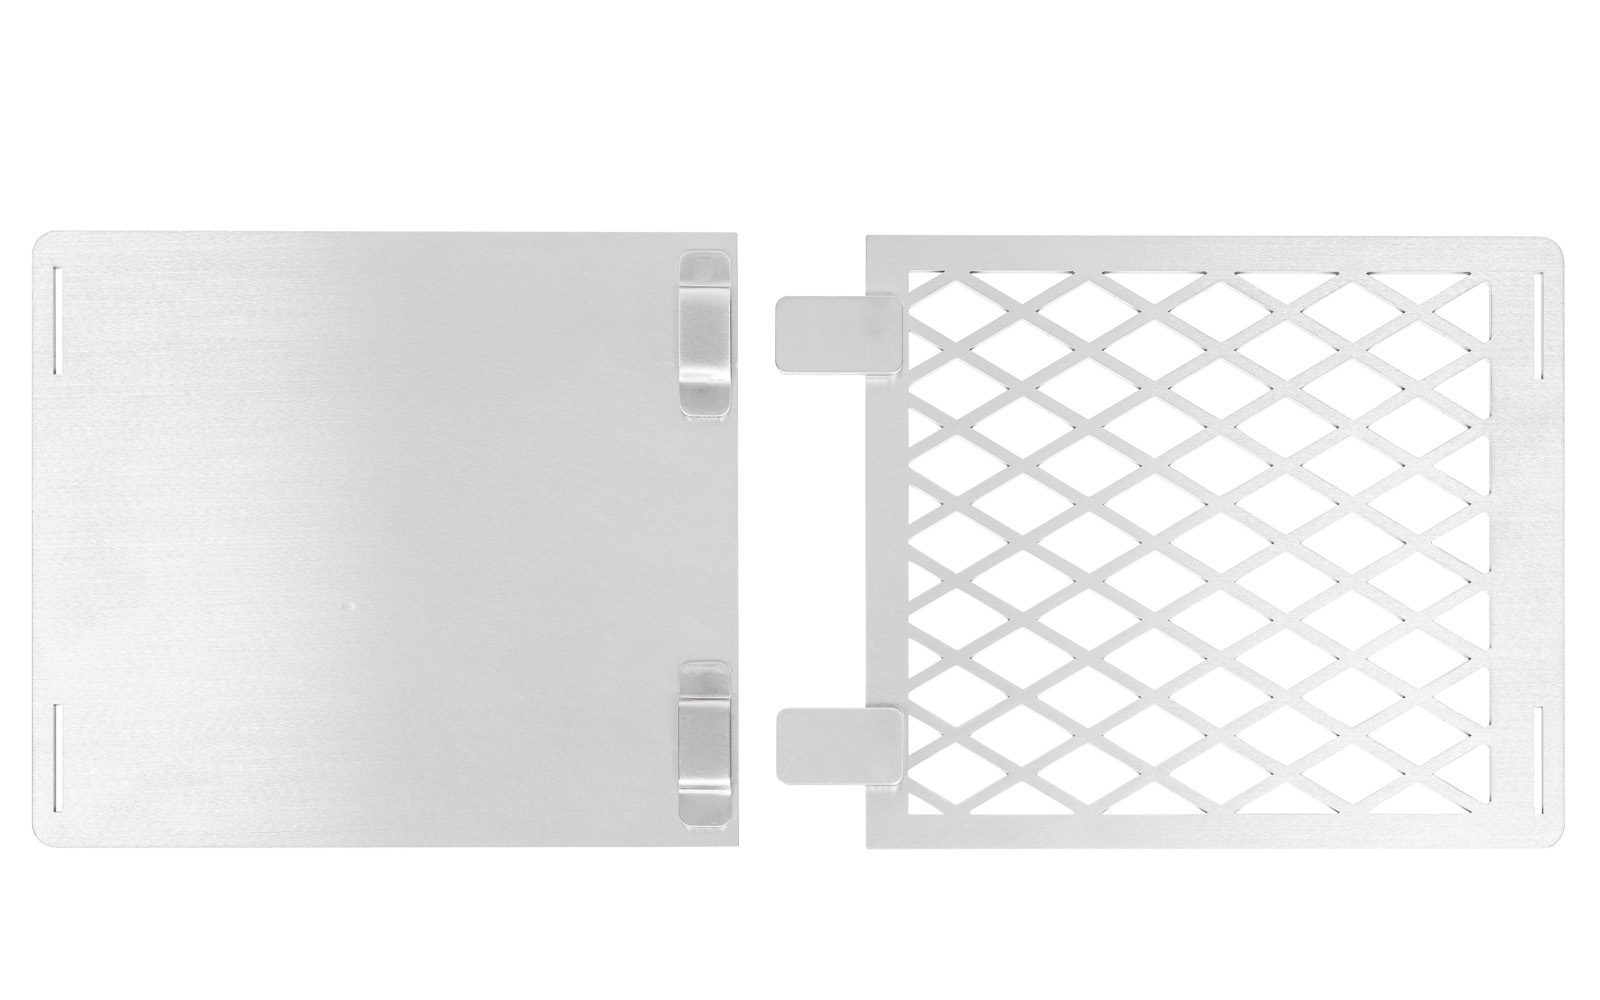 Die 2 Grillflächen des Grillrost 4Fire nebeneinander von unten betrachtet, freigestellt auf weißem Hintergrund.